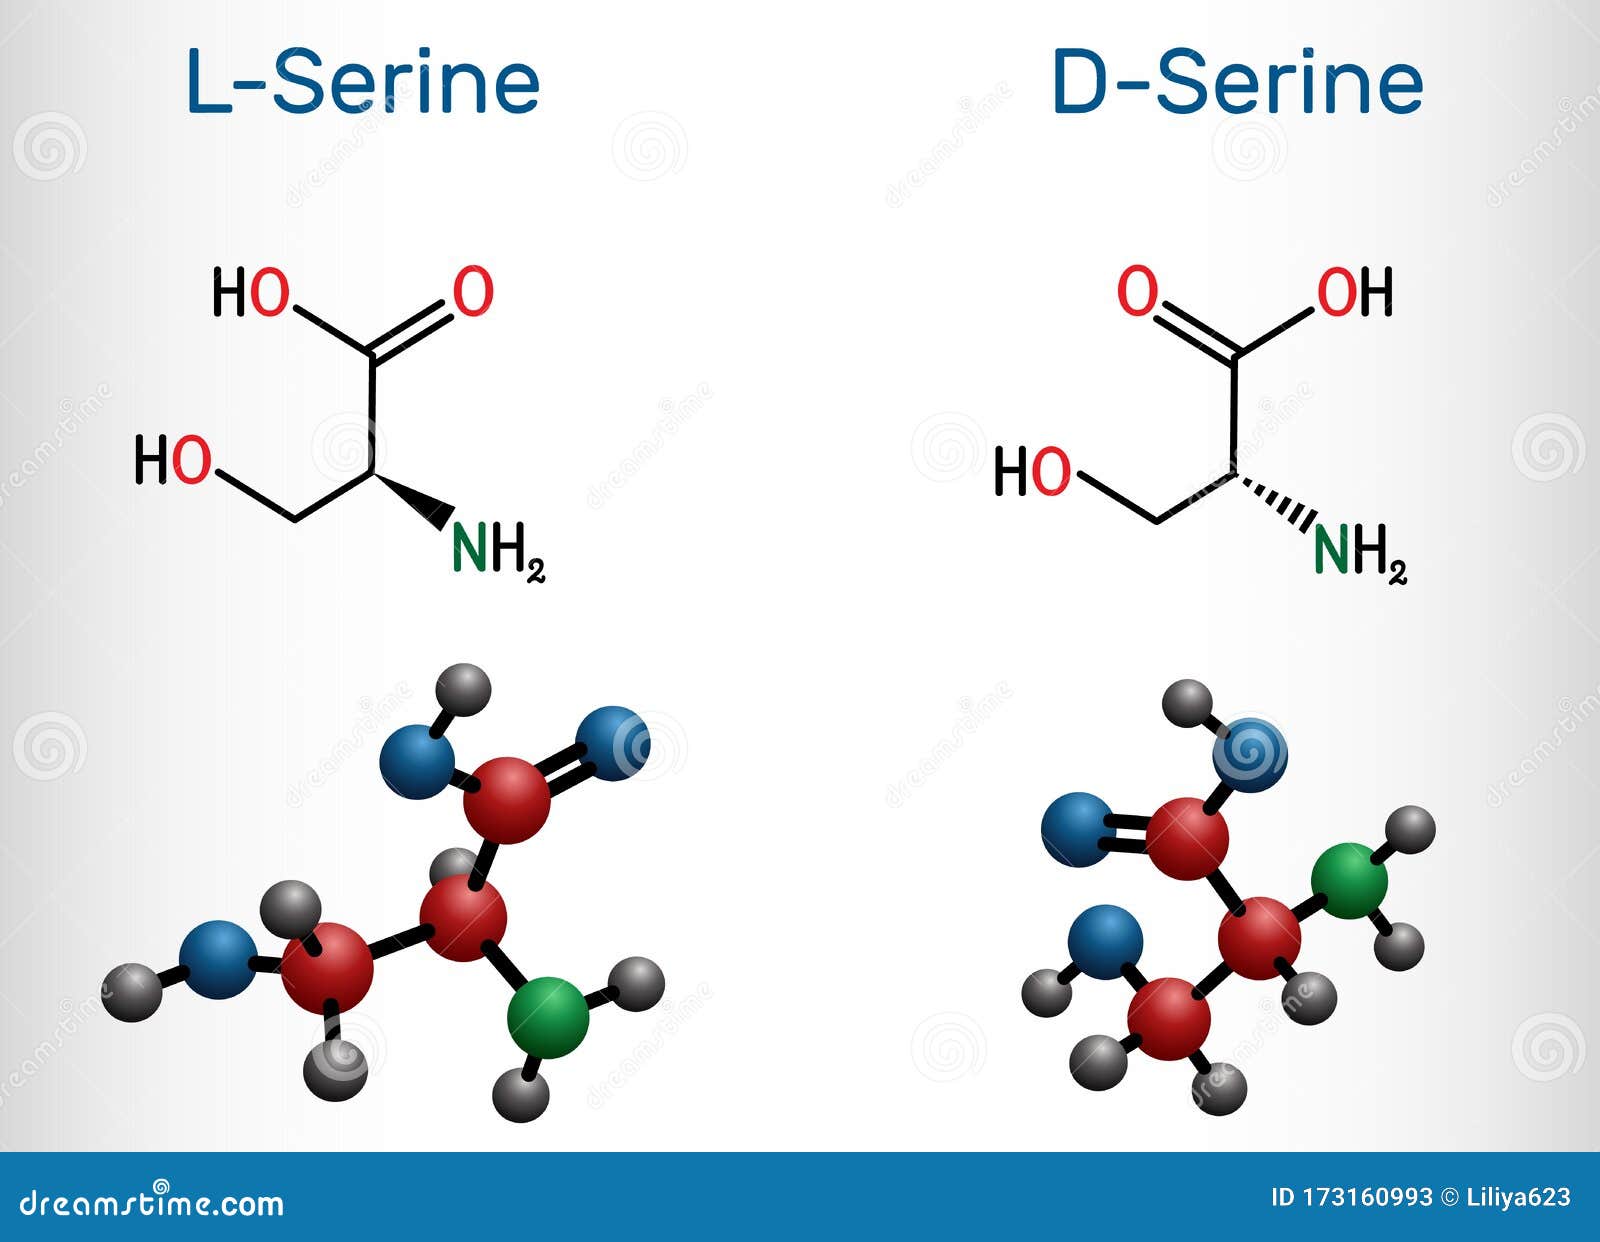 Serine, Ser Amino Acid Molecule. It Is Used In The